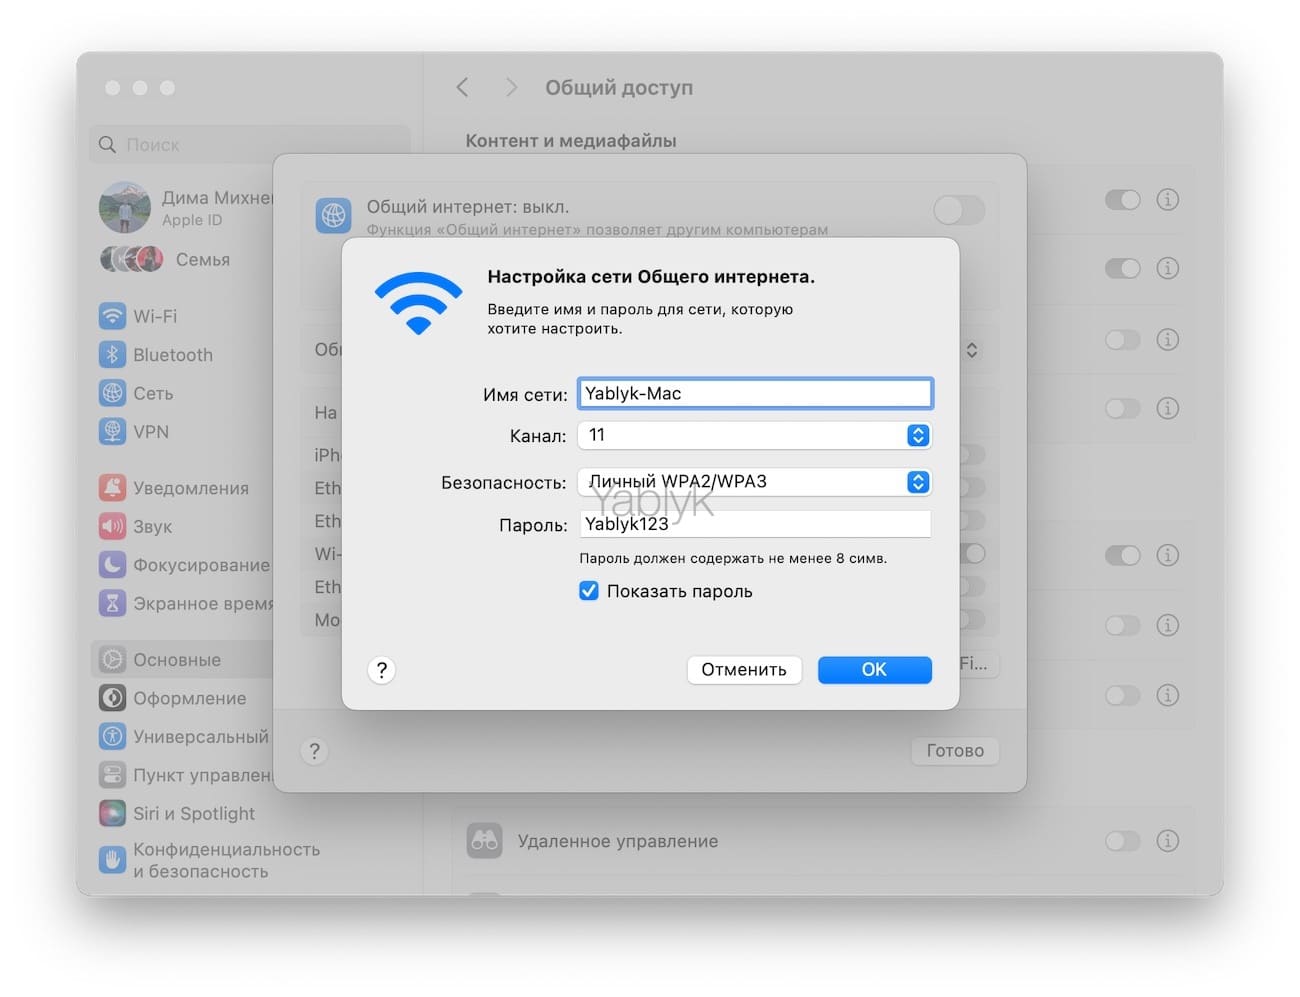 Как раздать интернет с Mac по Wi-Fi любому устройству?